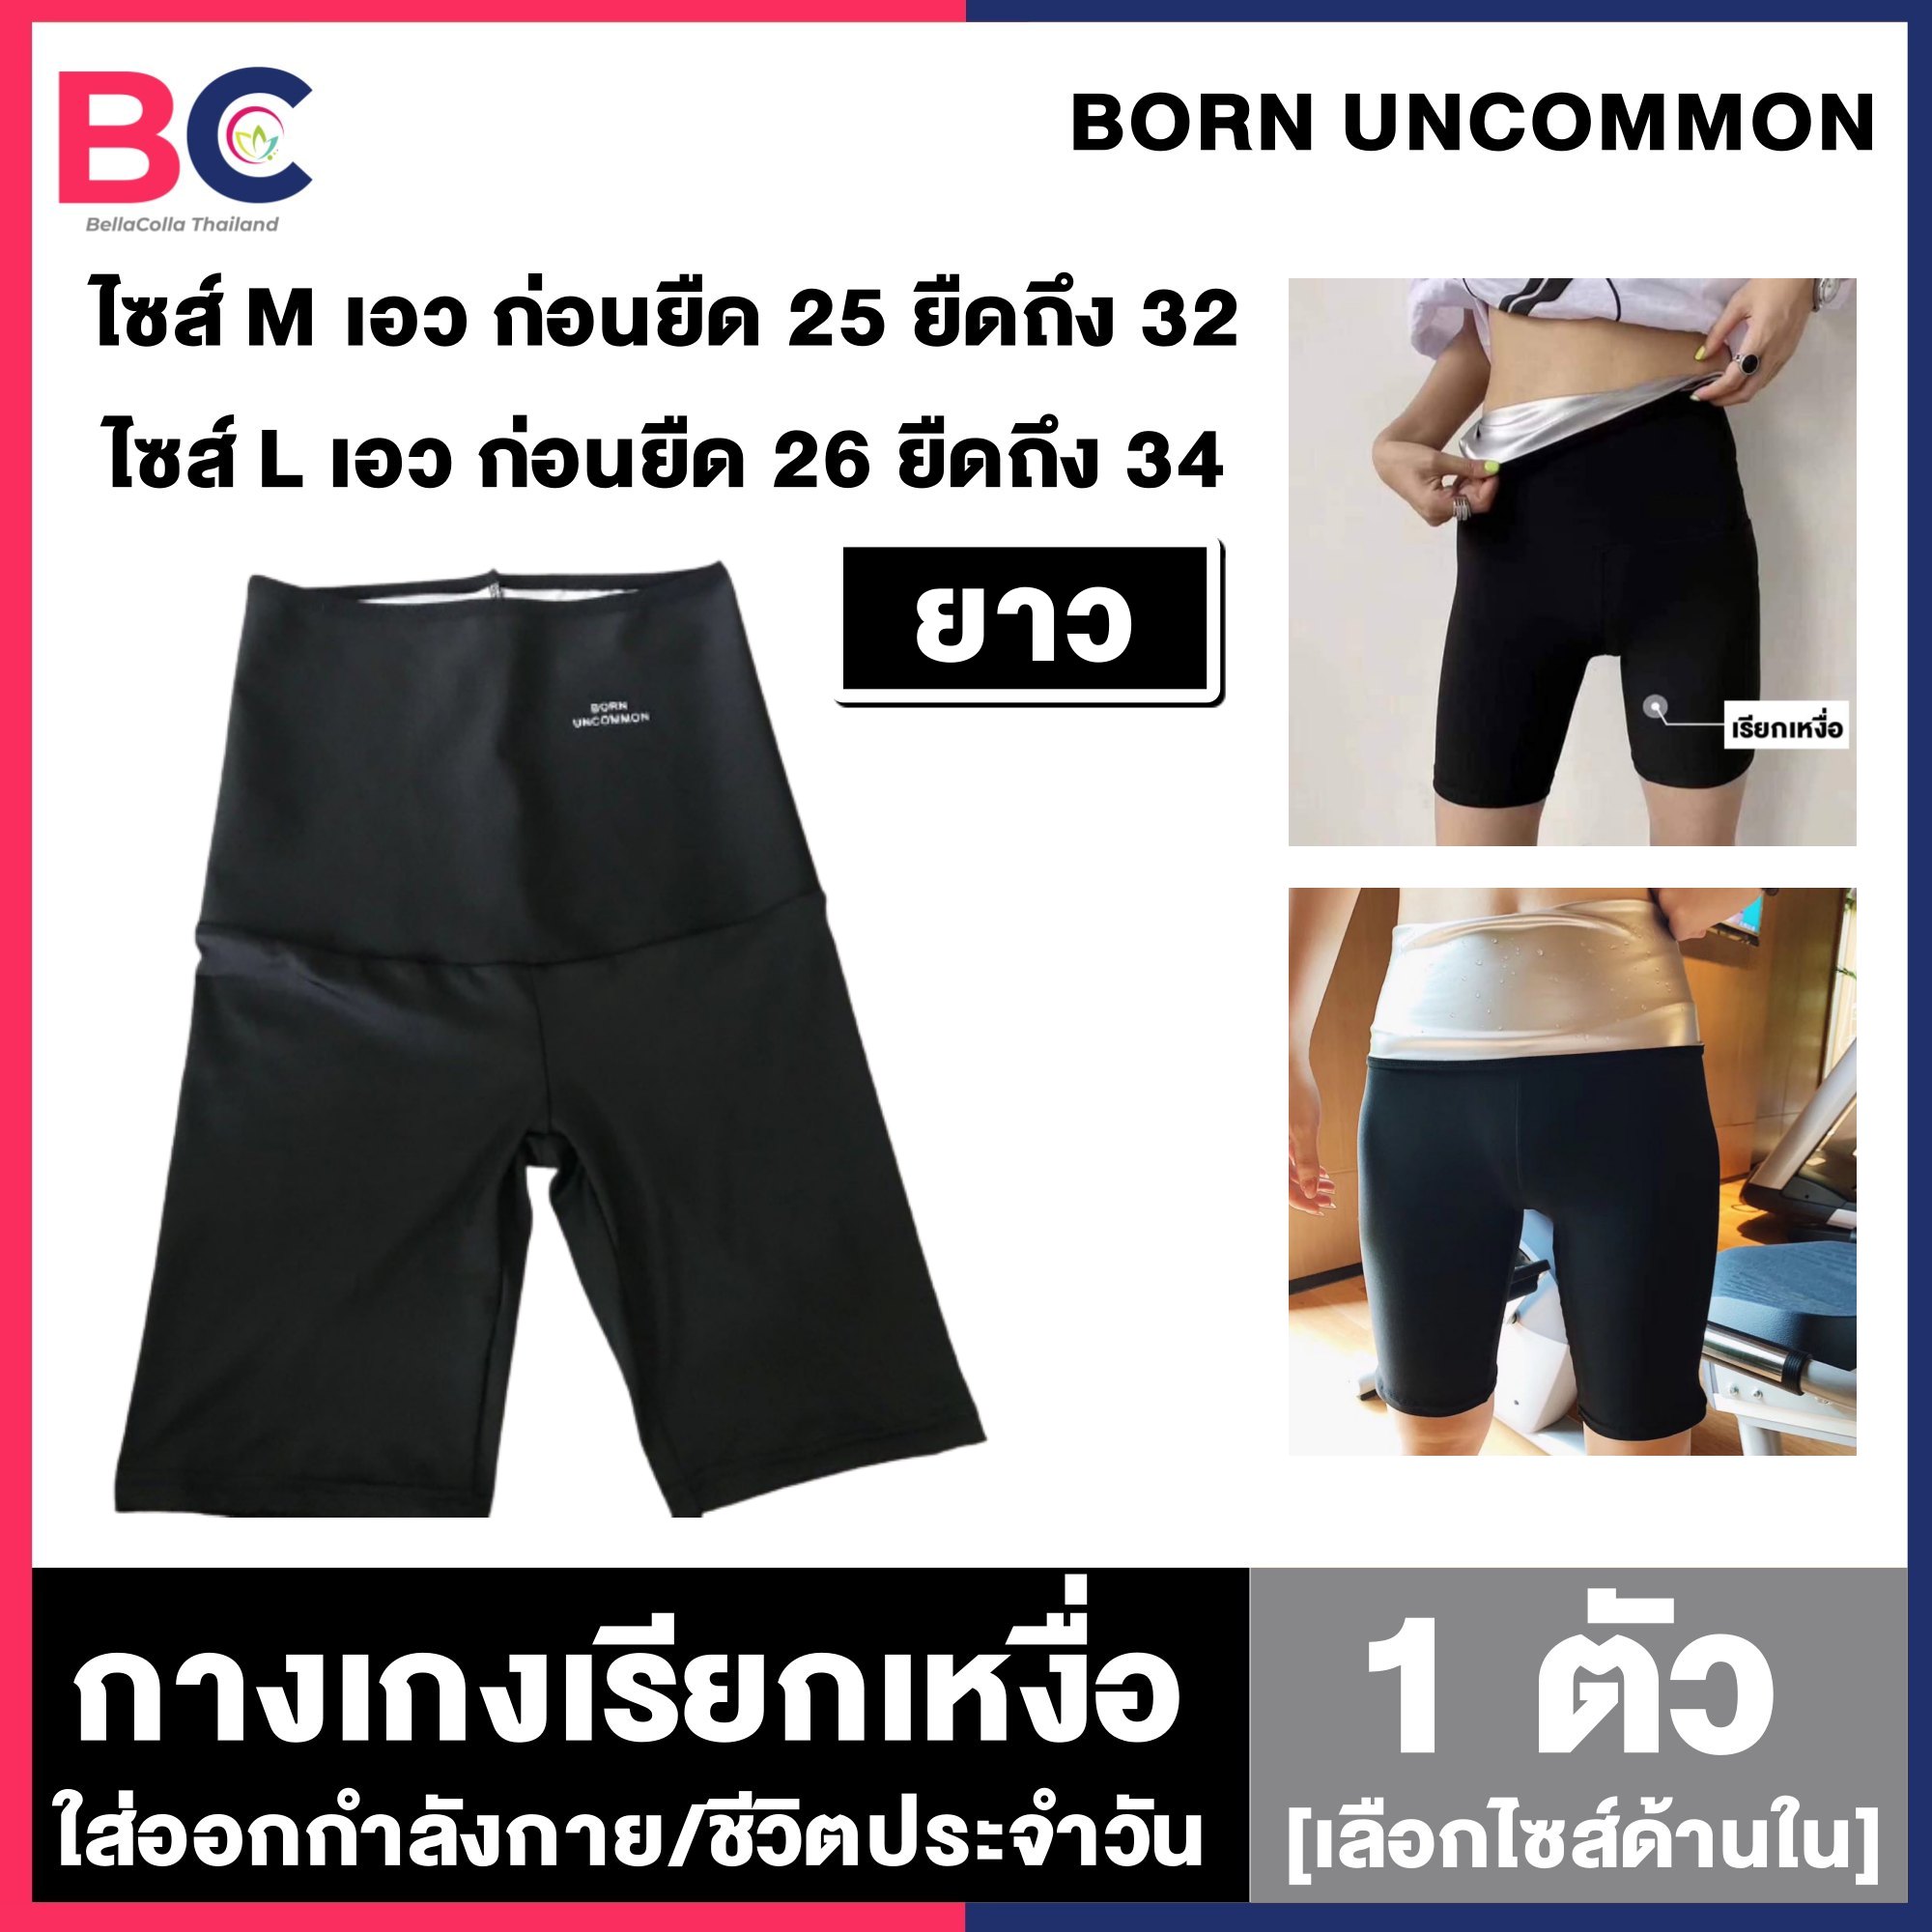 กางเกงเรียกเหงื่อ Born UnCommon [ยาวถึงเข่า] [1 ตัว] [เลือกไซส์ด้านใน] [ไซส์ M/L] ลดสัดส่วน ใส่สบาย กางเกงรีดเหงื่อสำหรับออกกำลังกาย รีดไขมัน